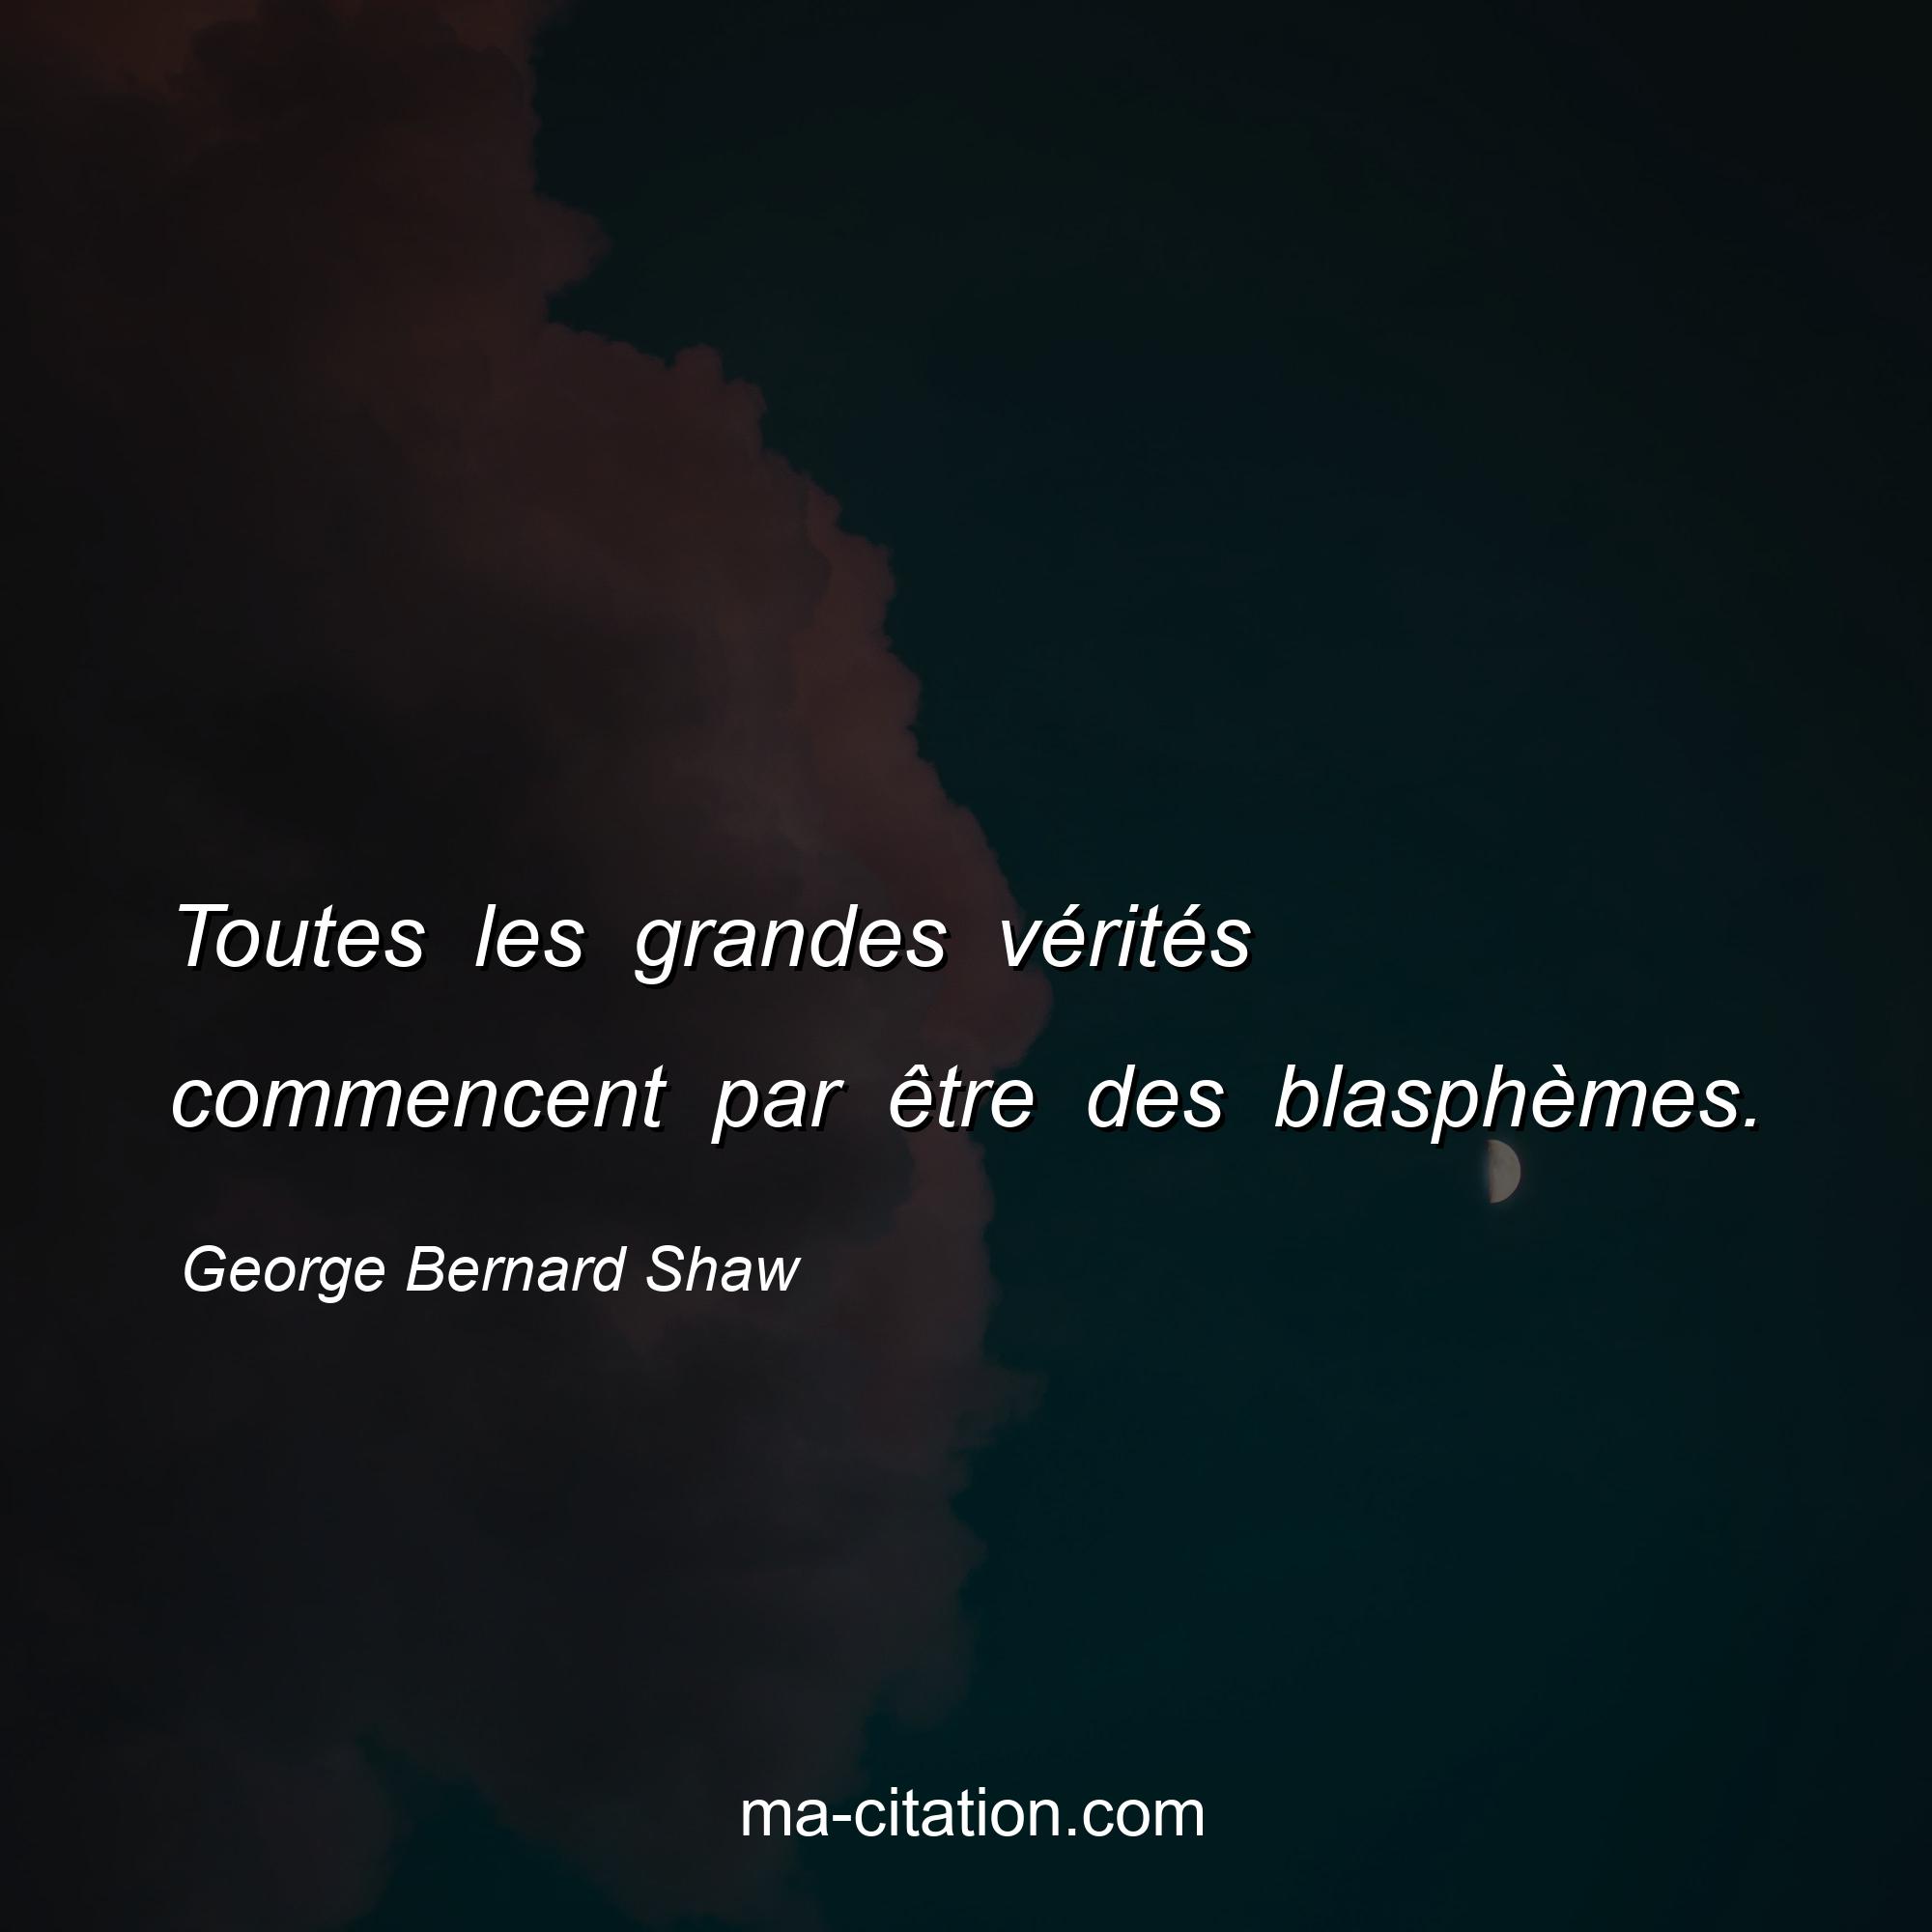 George Bernard Shaw : Toutes les grandes vérités commencent par être des blasphèmes.